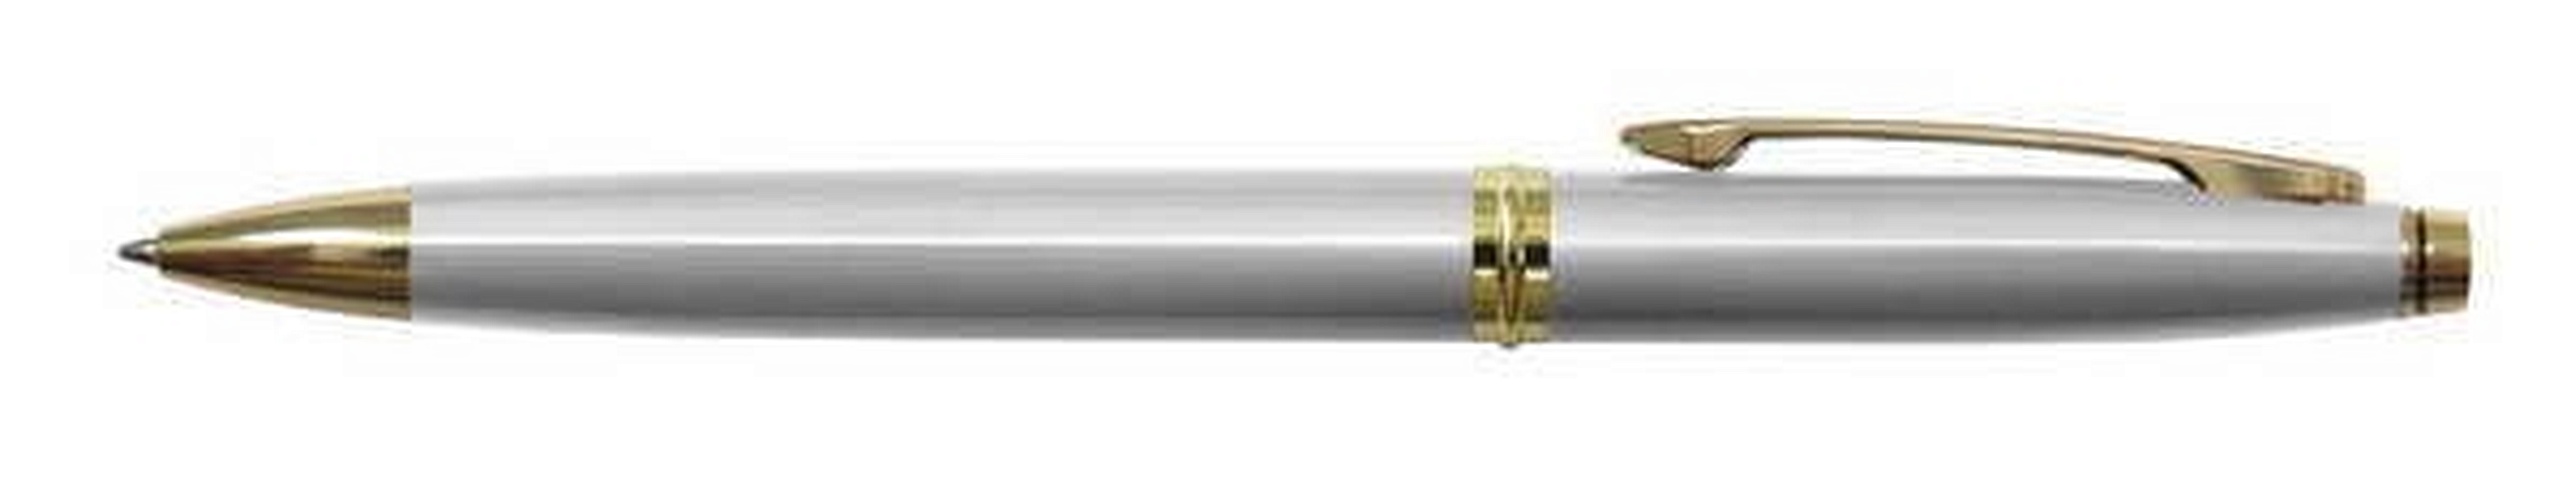 Ручка шариковая автоматическая синяя Silver Luxe 0,7мм, корпус металл.серебр, BERLINGO ручка шариковая автоматическая radiance синяя 0 7 мм